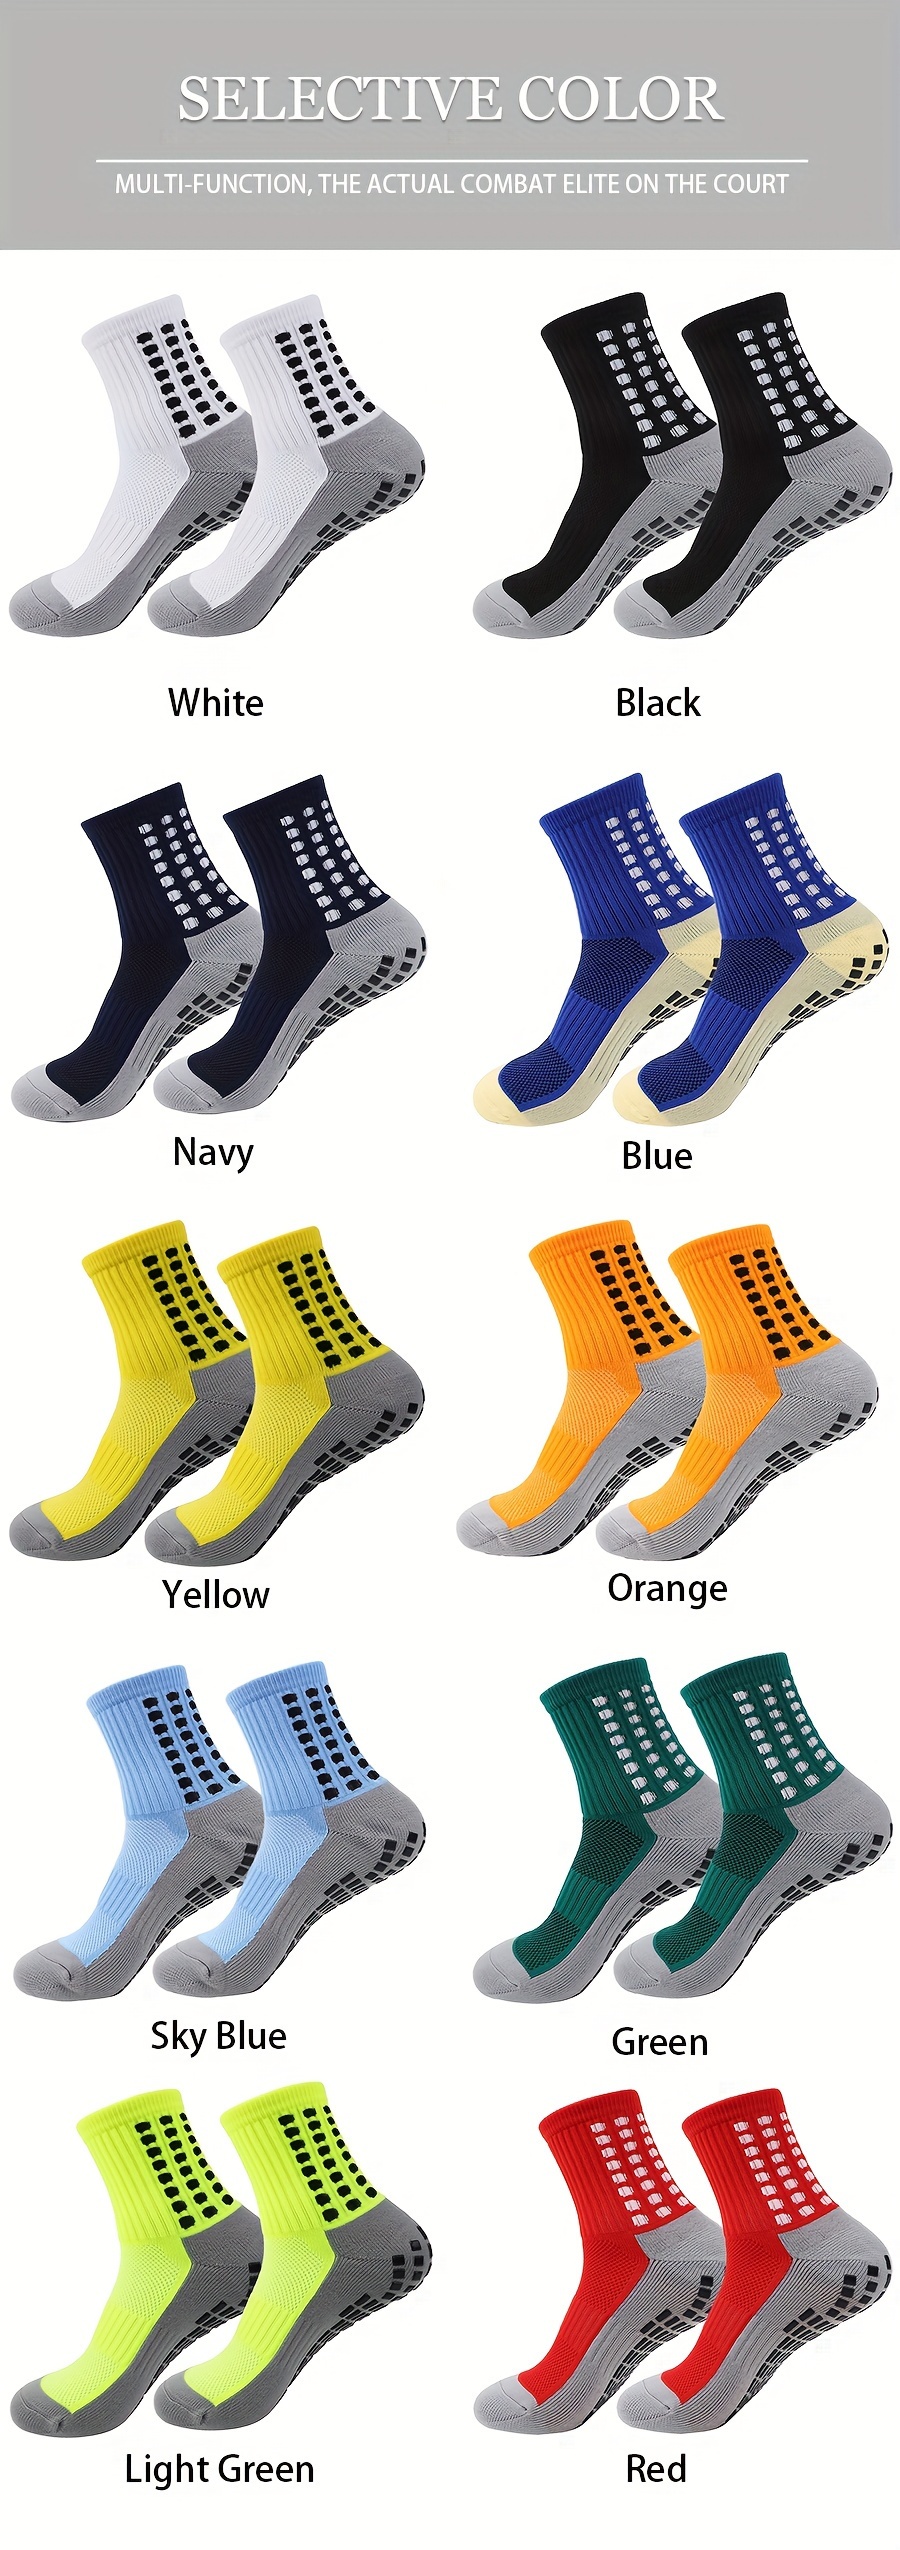 Betz 10 pares de calcetines deportivos para mujer y hombre